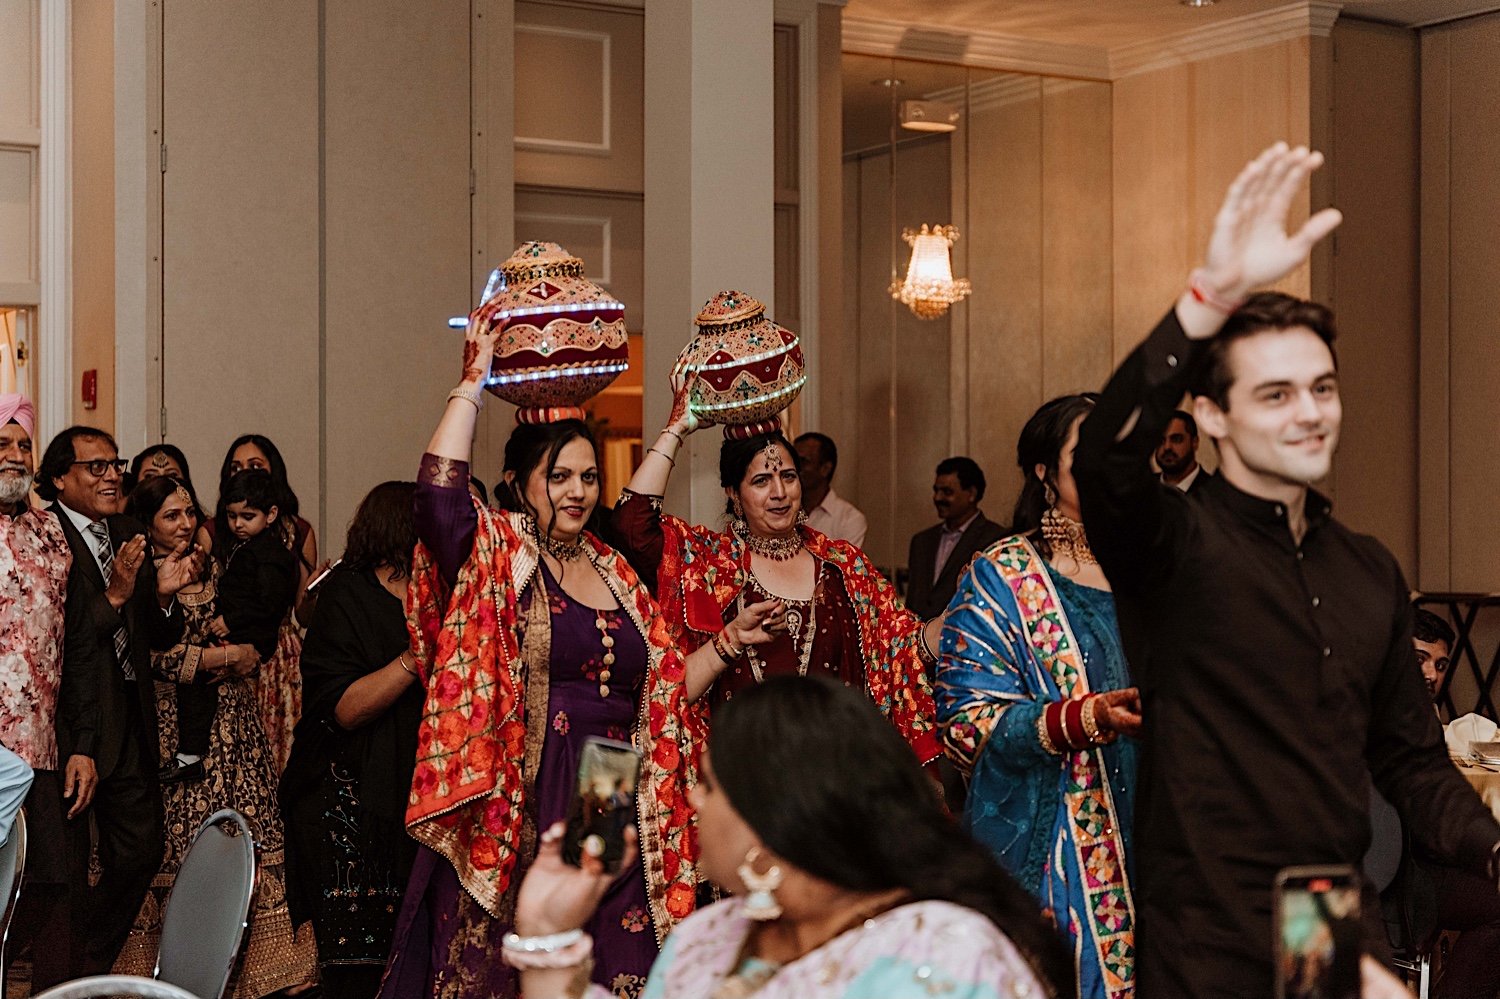 Dancing at Jago party during Indian Wedding